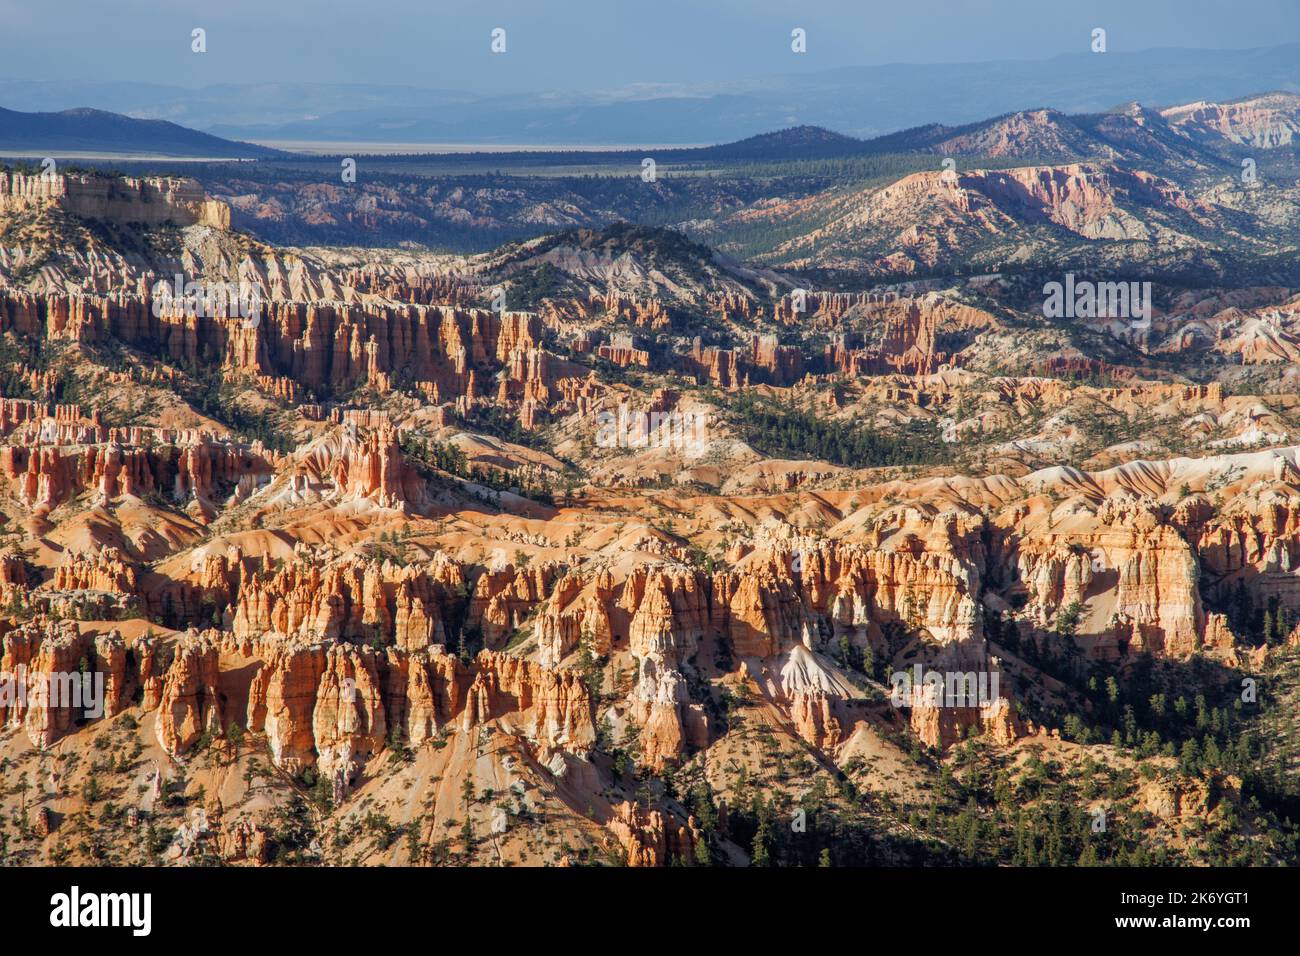 Bryce Canyon - roches piquantes rouges dans le canyon de Bryce dans l'Utah. L'amphithéâtre du canyon de Bryce surplombe de fascinantes roches rouges et orange à l'heure d'or Banque D'Images